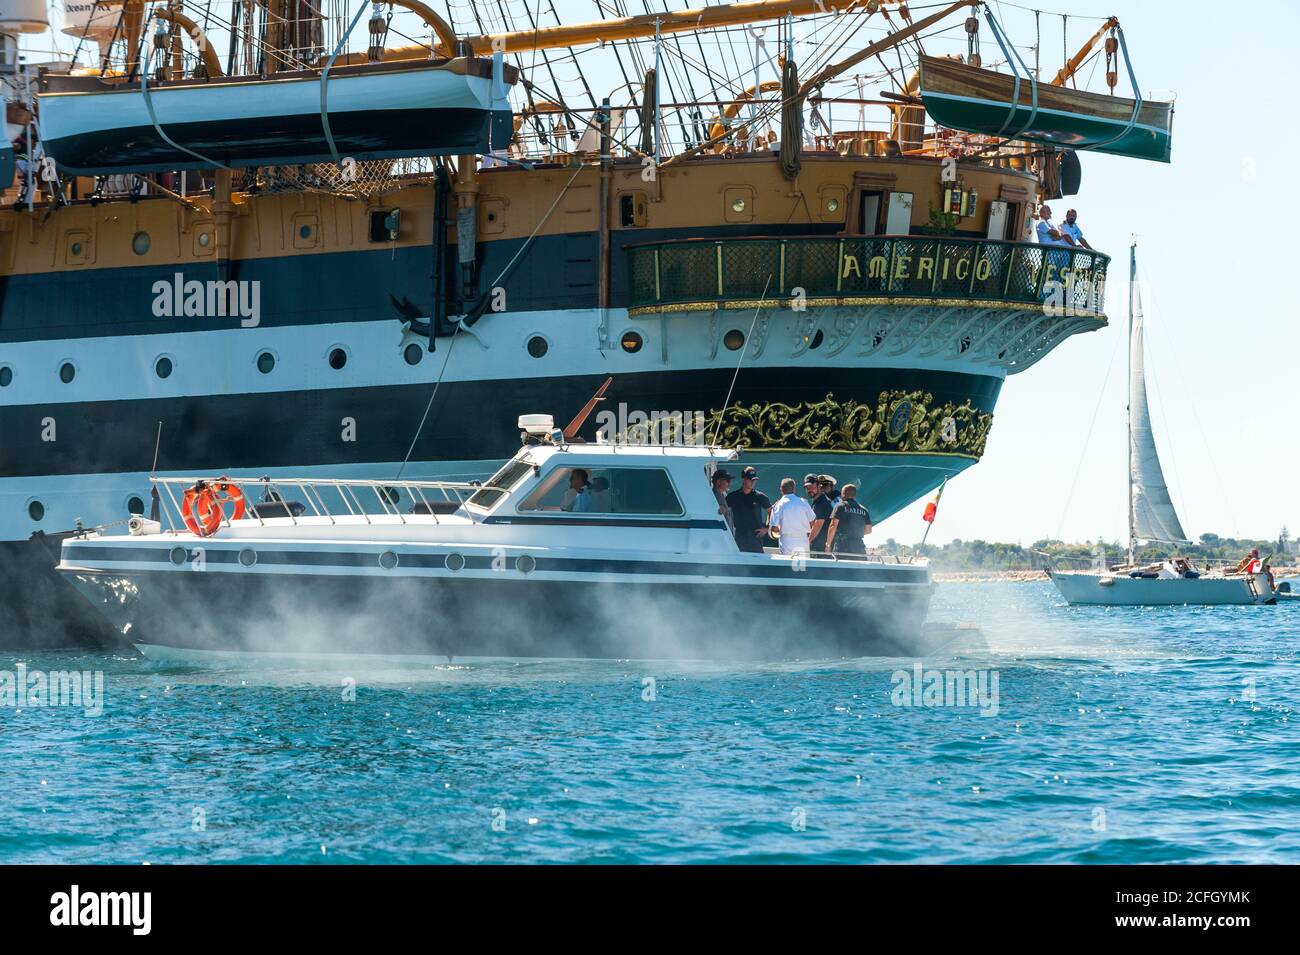 22 agosto 2020 - la nave di pattuglia assiste la NAVE alta AMERIGO VESPUCCI; la nave Amerigo Vespucci è la nave di addestramento della Marina militare Italiana AC Foto Stock